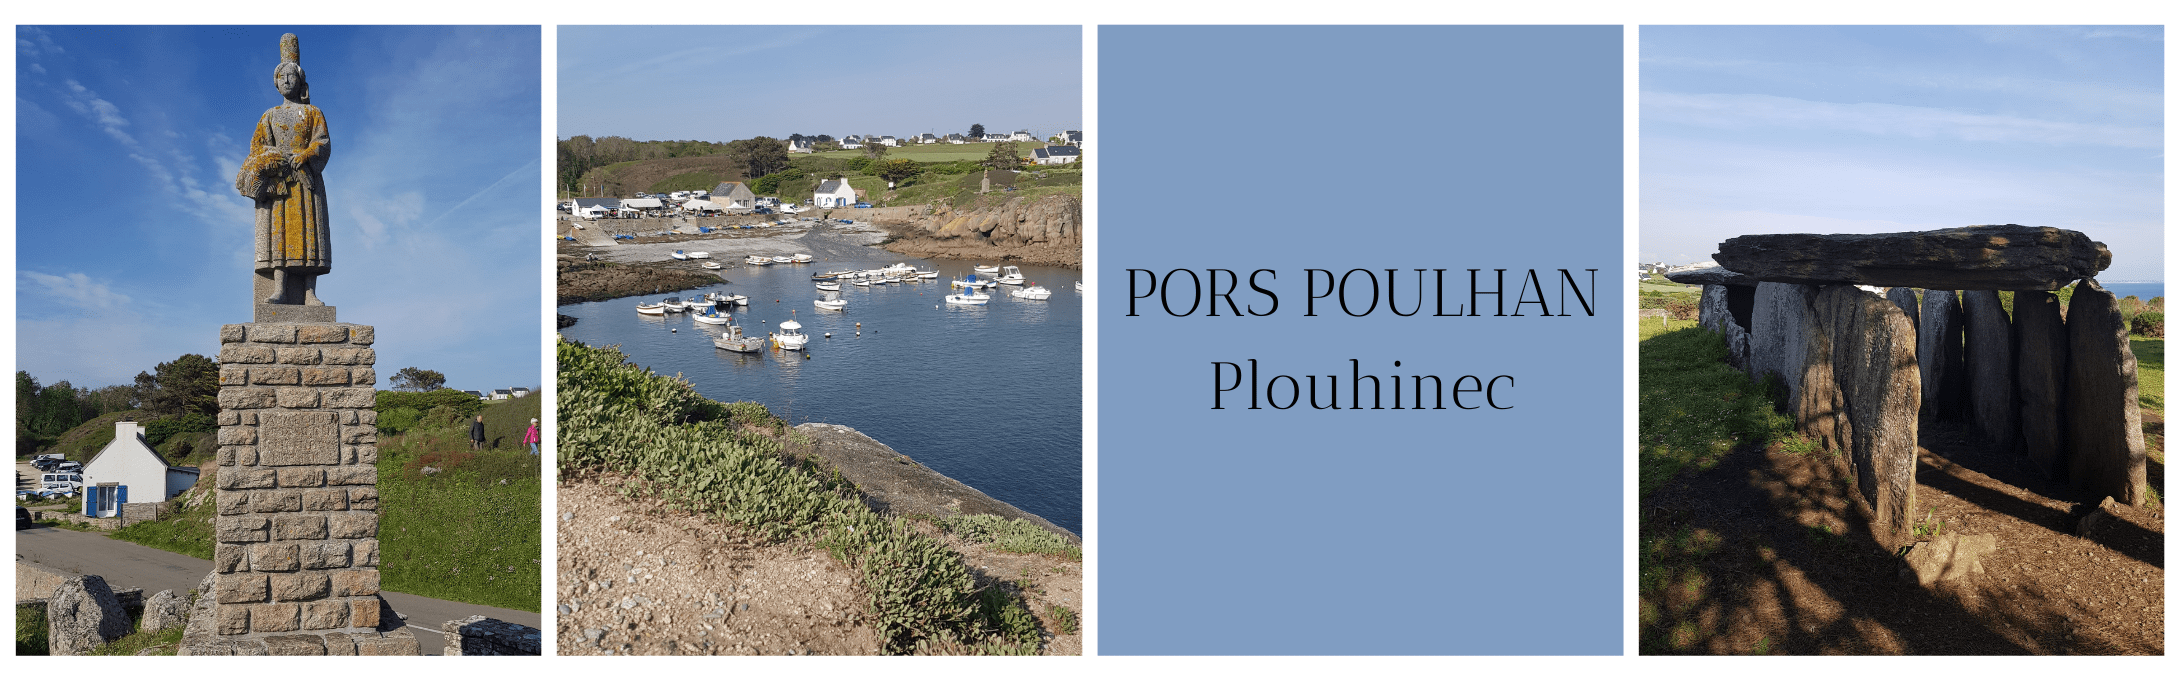 Pors Poulhan à Plouhinec 